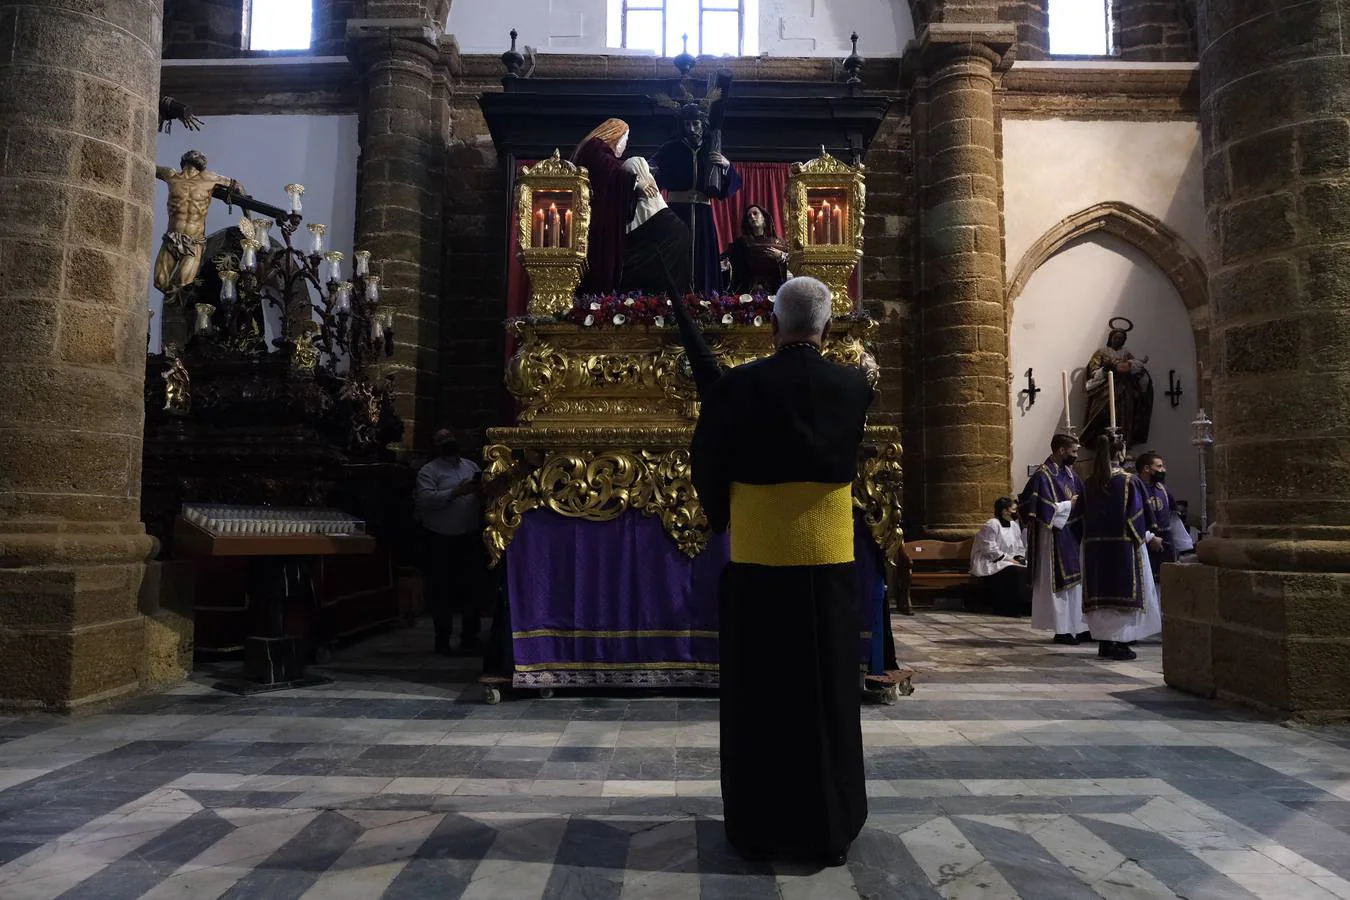 Fotos: Sanidad el Martes Santo en Cádiz